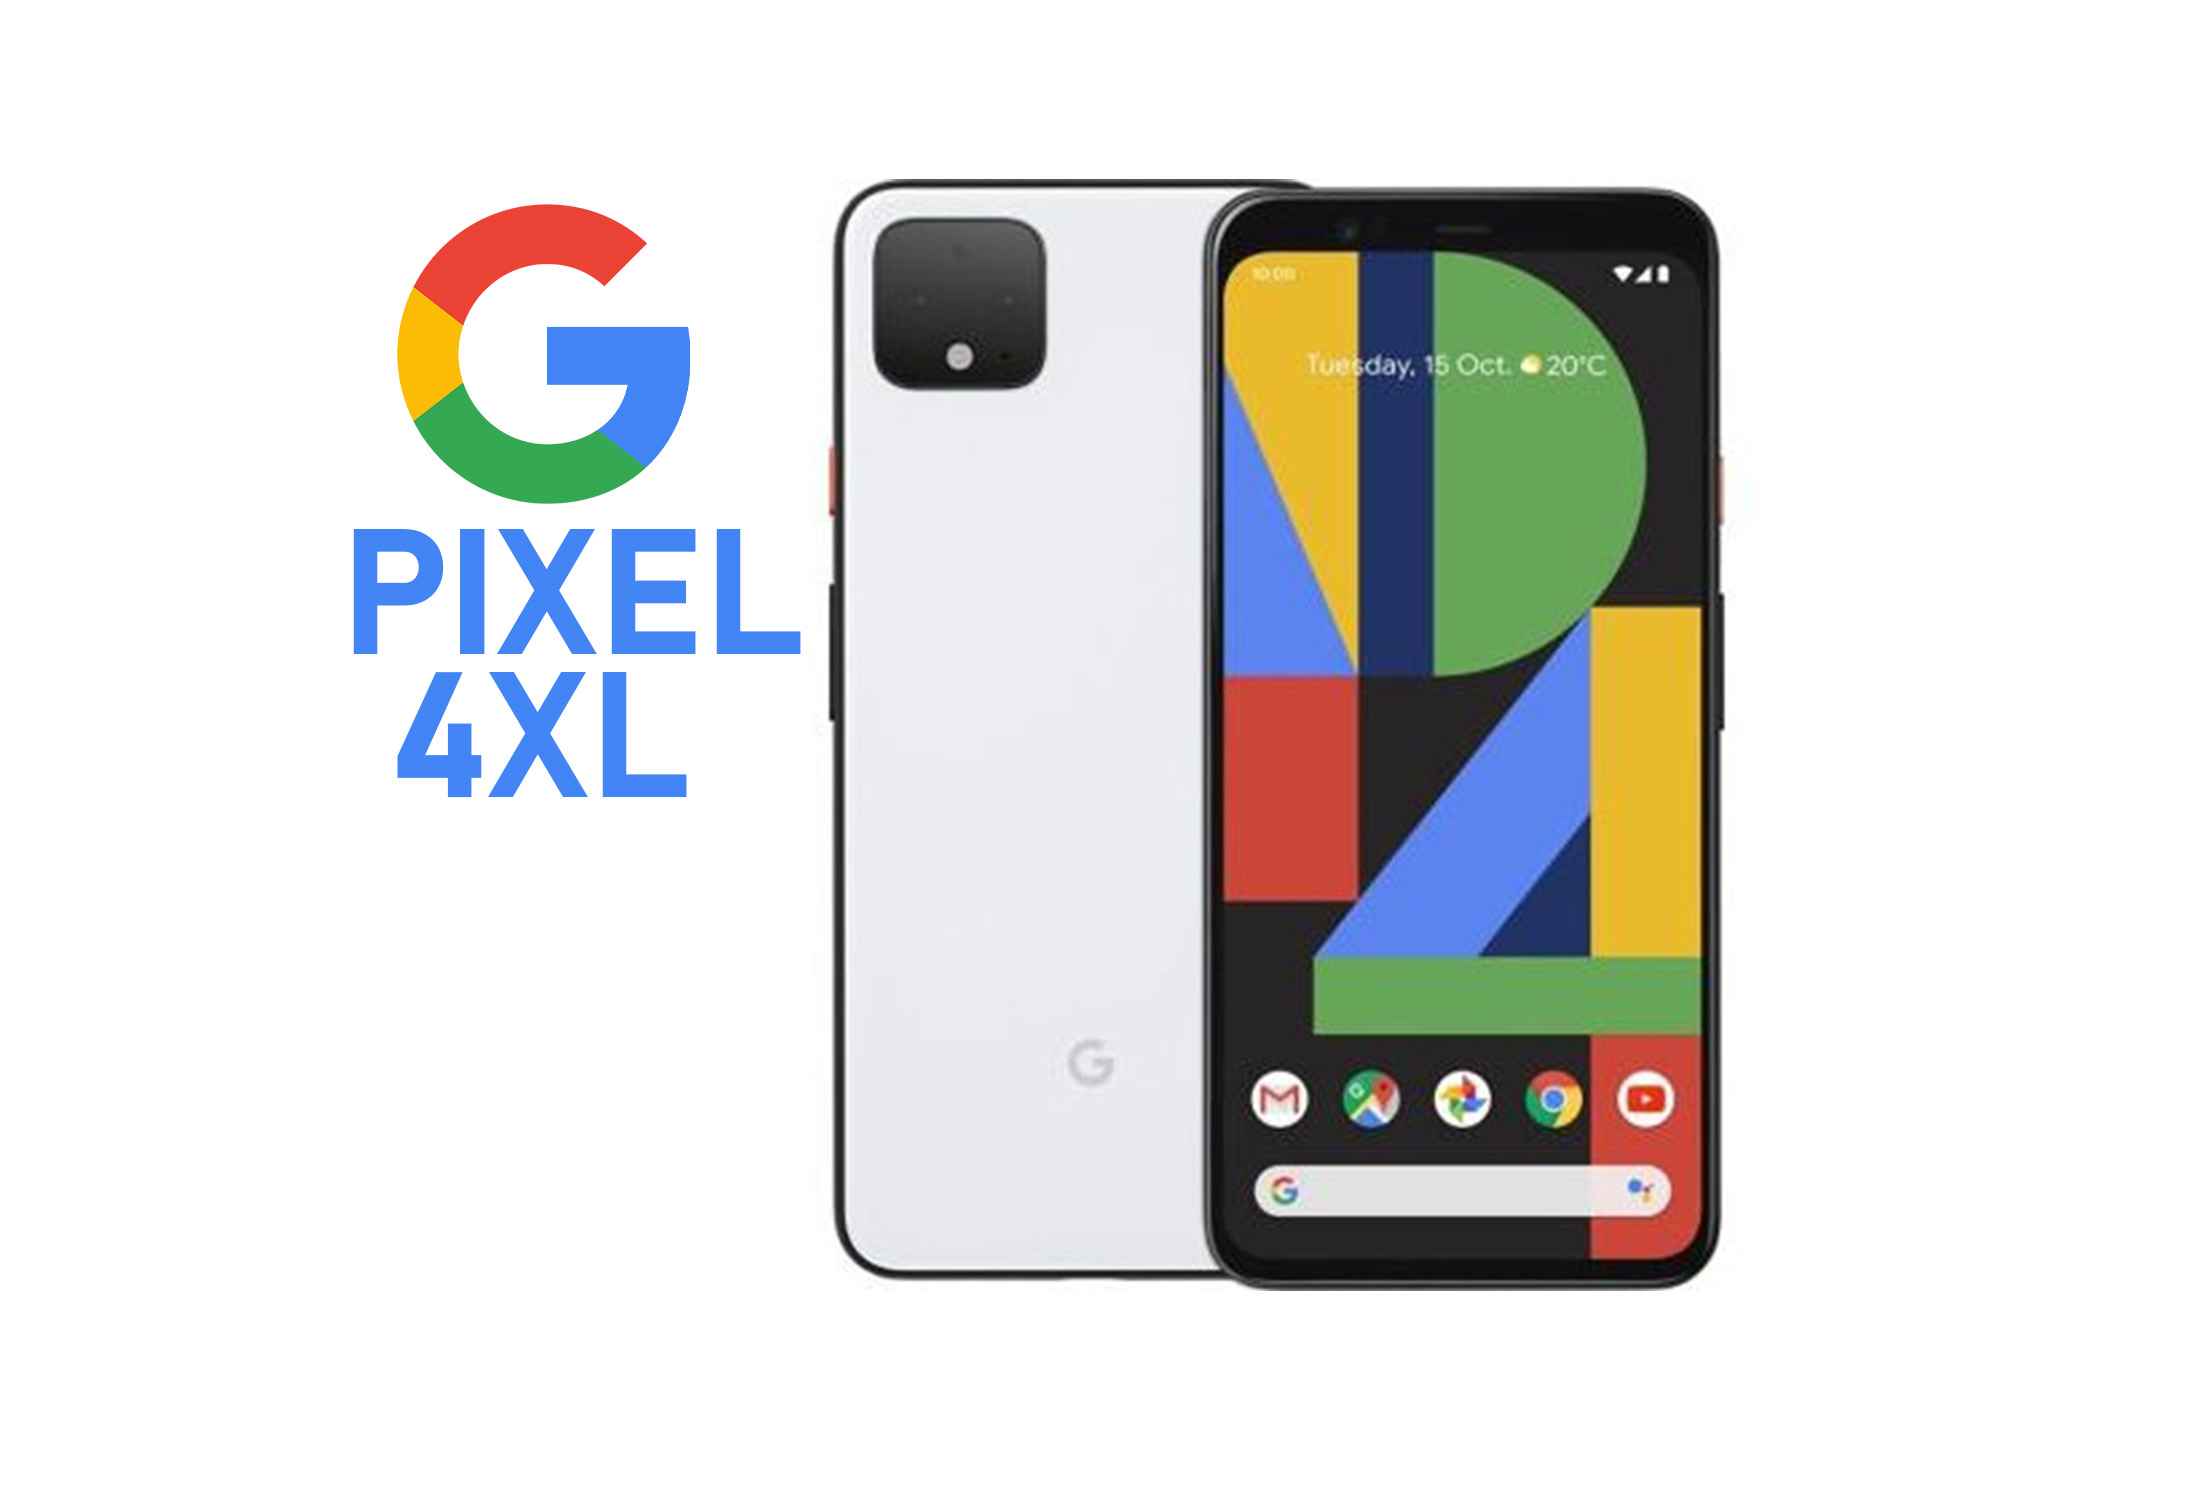 Google Pixel 4XL Snapdragon 855 Octa-Core 6GB RAM  64GB ROM